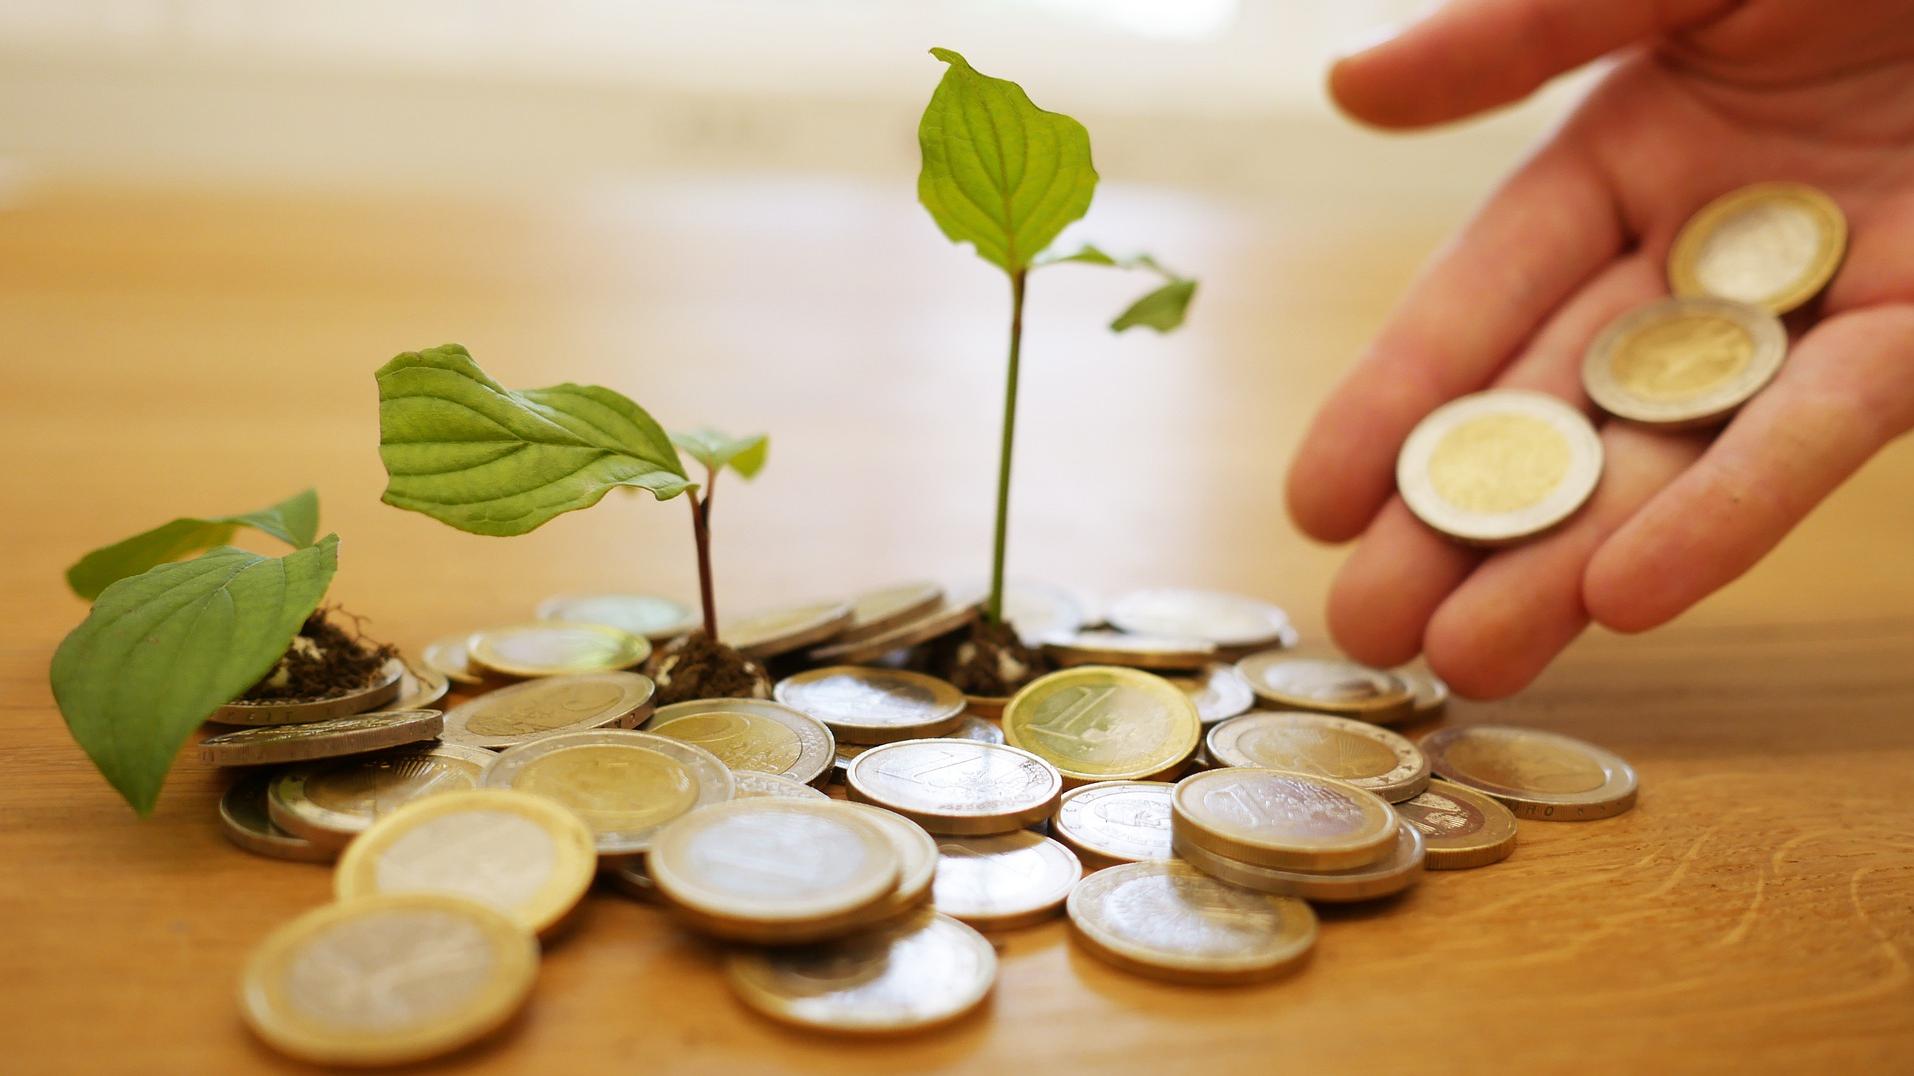 Stimmungsbild zum Beitrag: Es werden Geldmünzen mit kleinen wachsenden Pflanzen abgebildet.